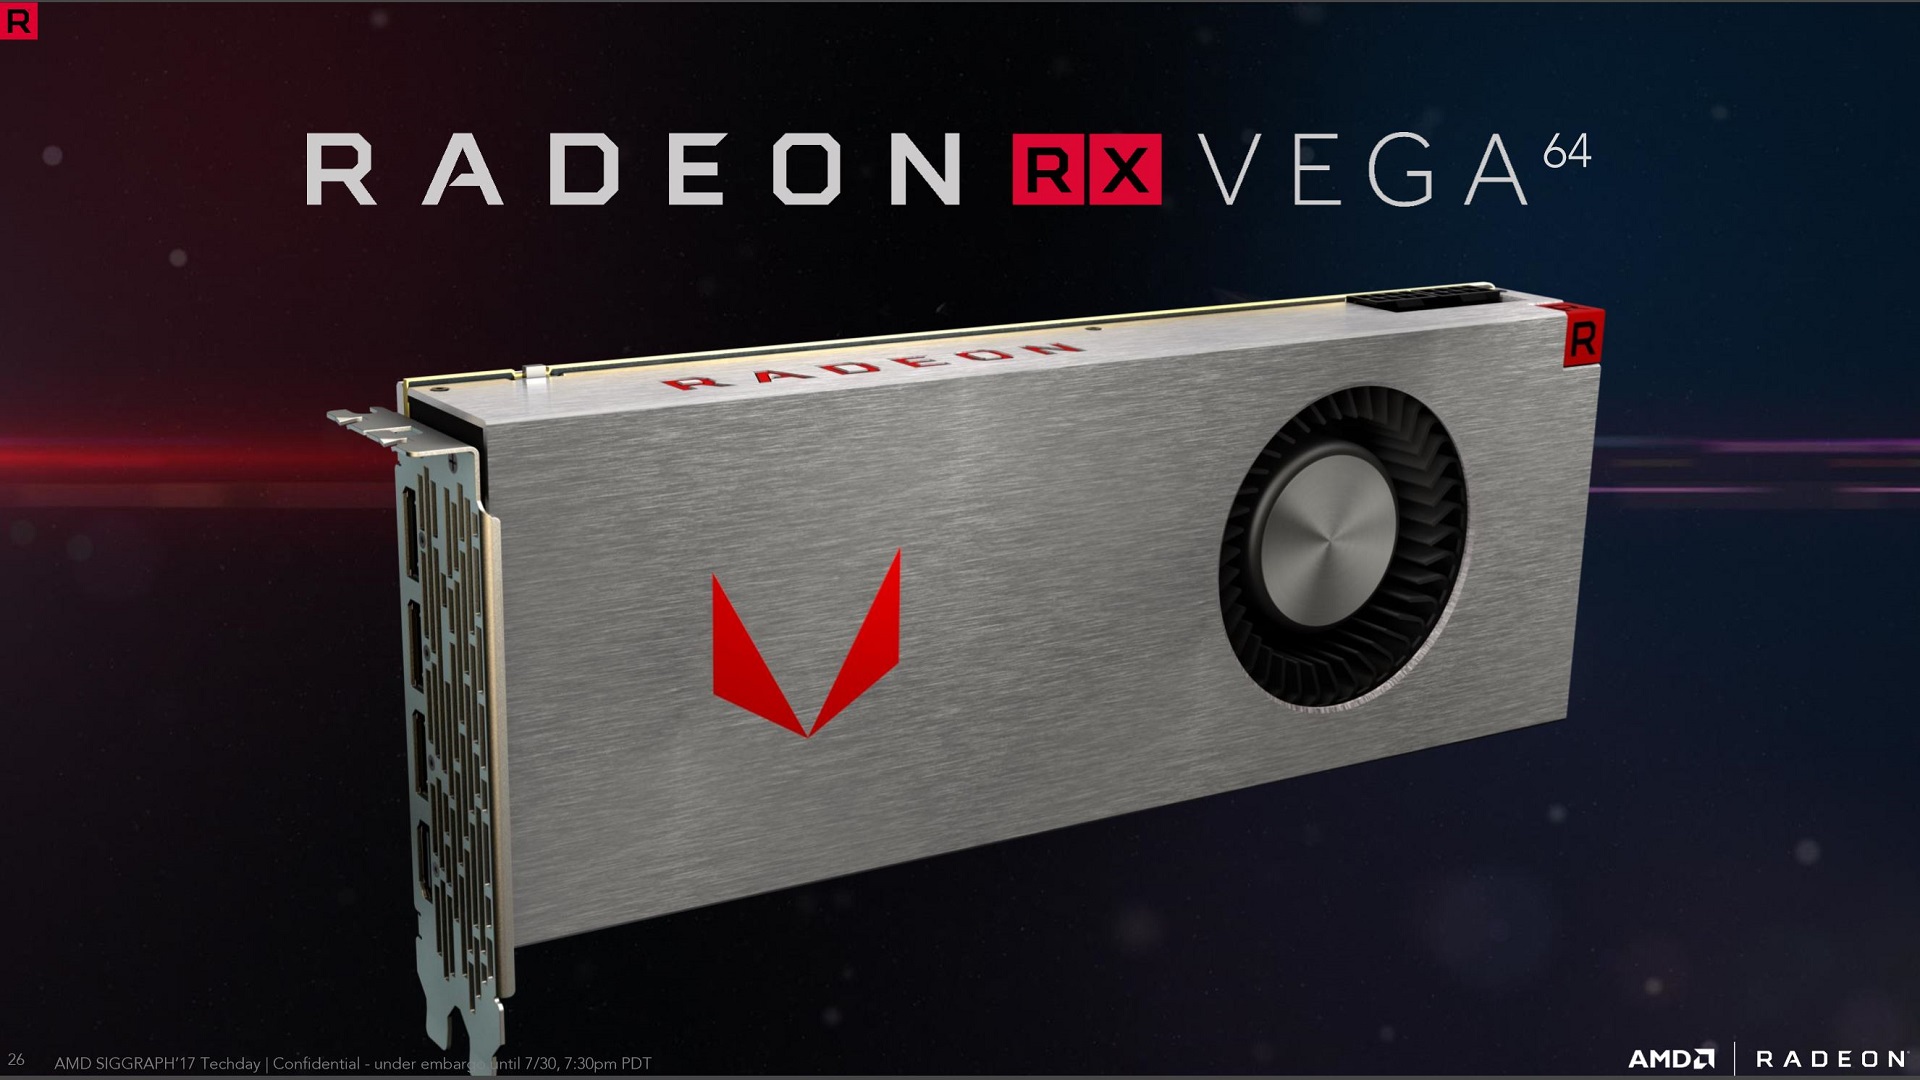 Meet the high-end AMD RX Vega GPU